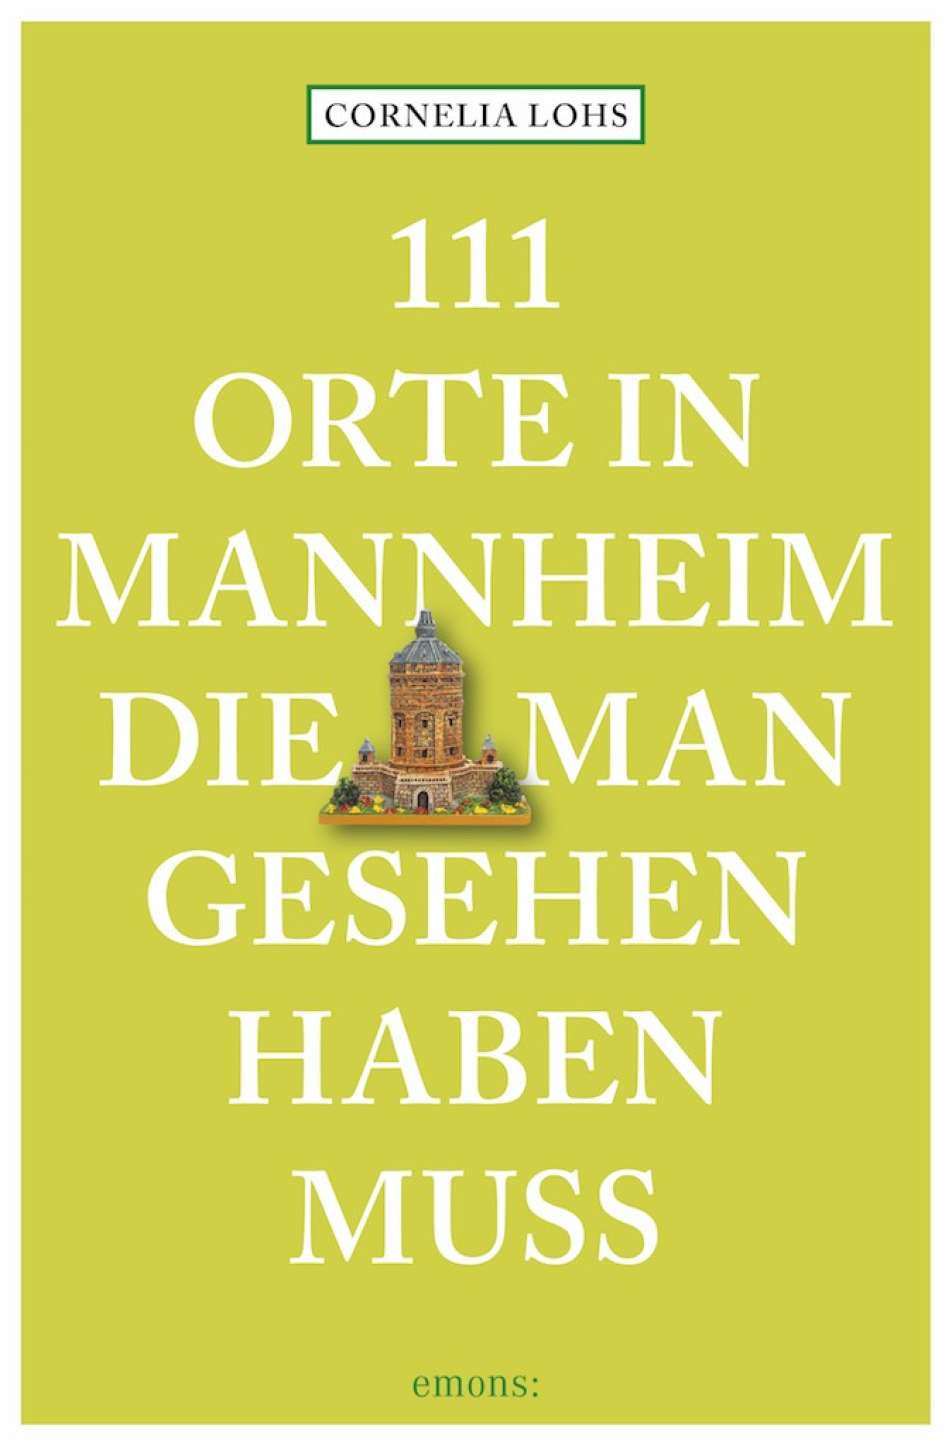 Buchcover von "111 Orte in Mannheim, die man gesehen haben muss"